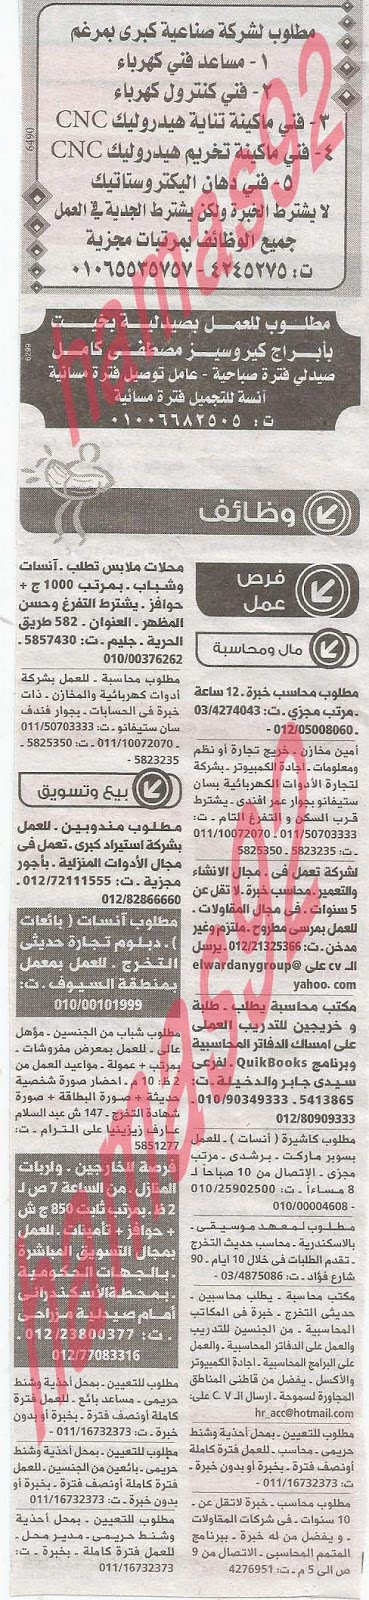 وظائف خالية فى جريدة الوسيط الاسكندرية السبت 08-06-2013 %D9%88+%D8%B3+%D8%B3+2